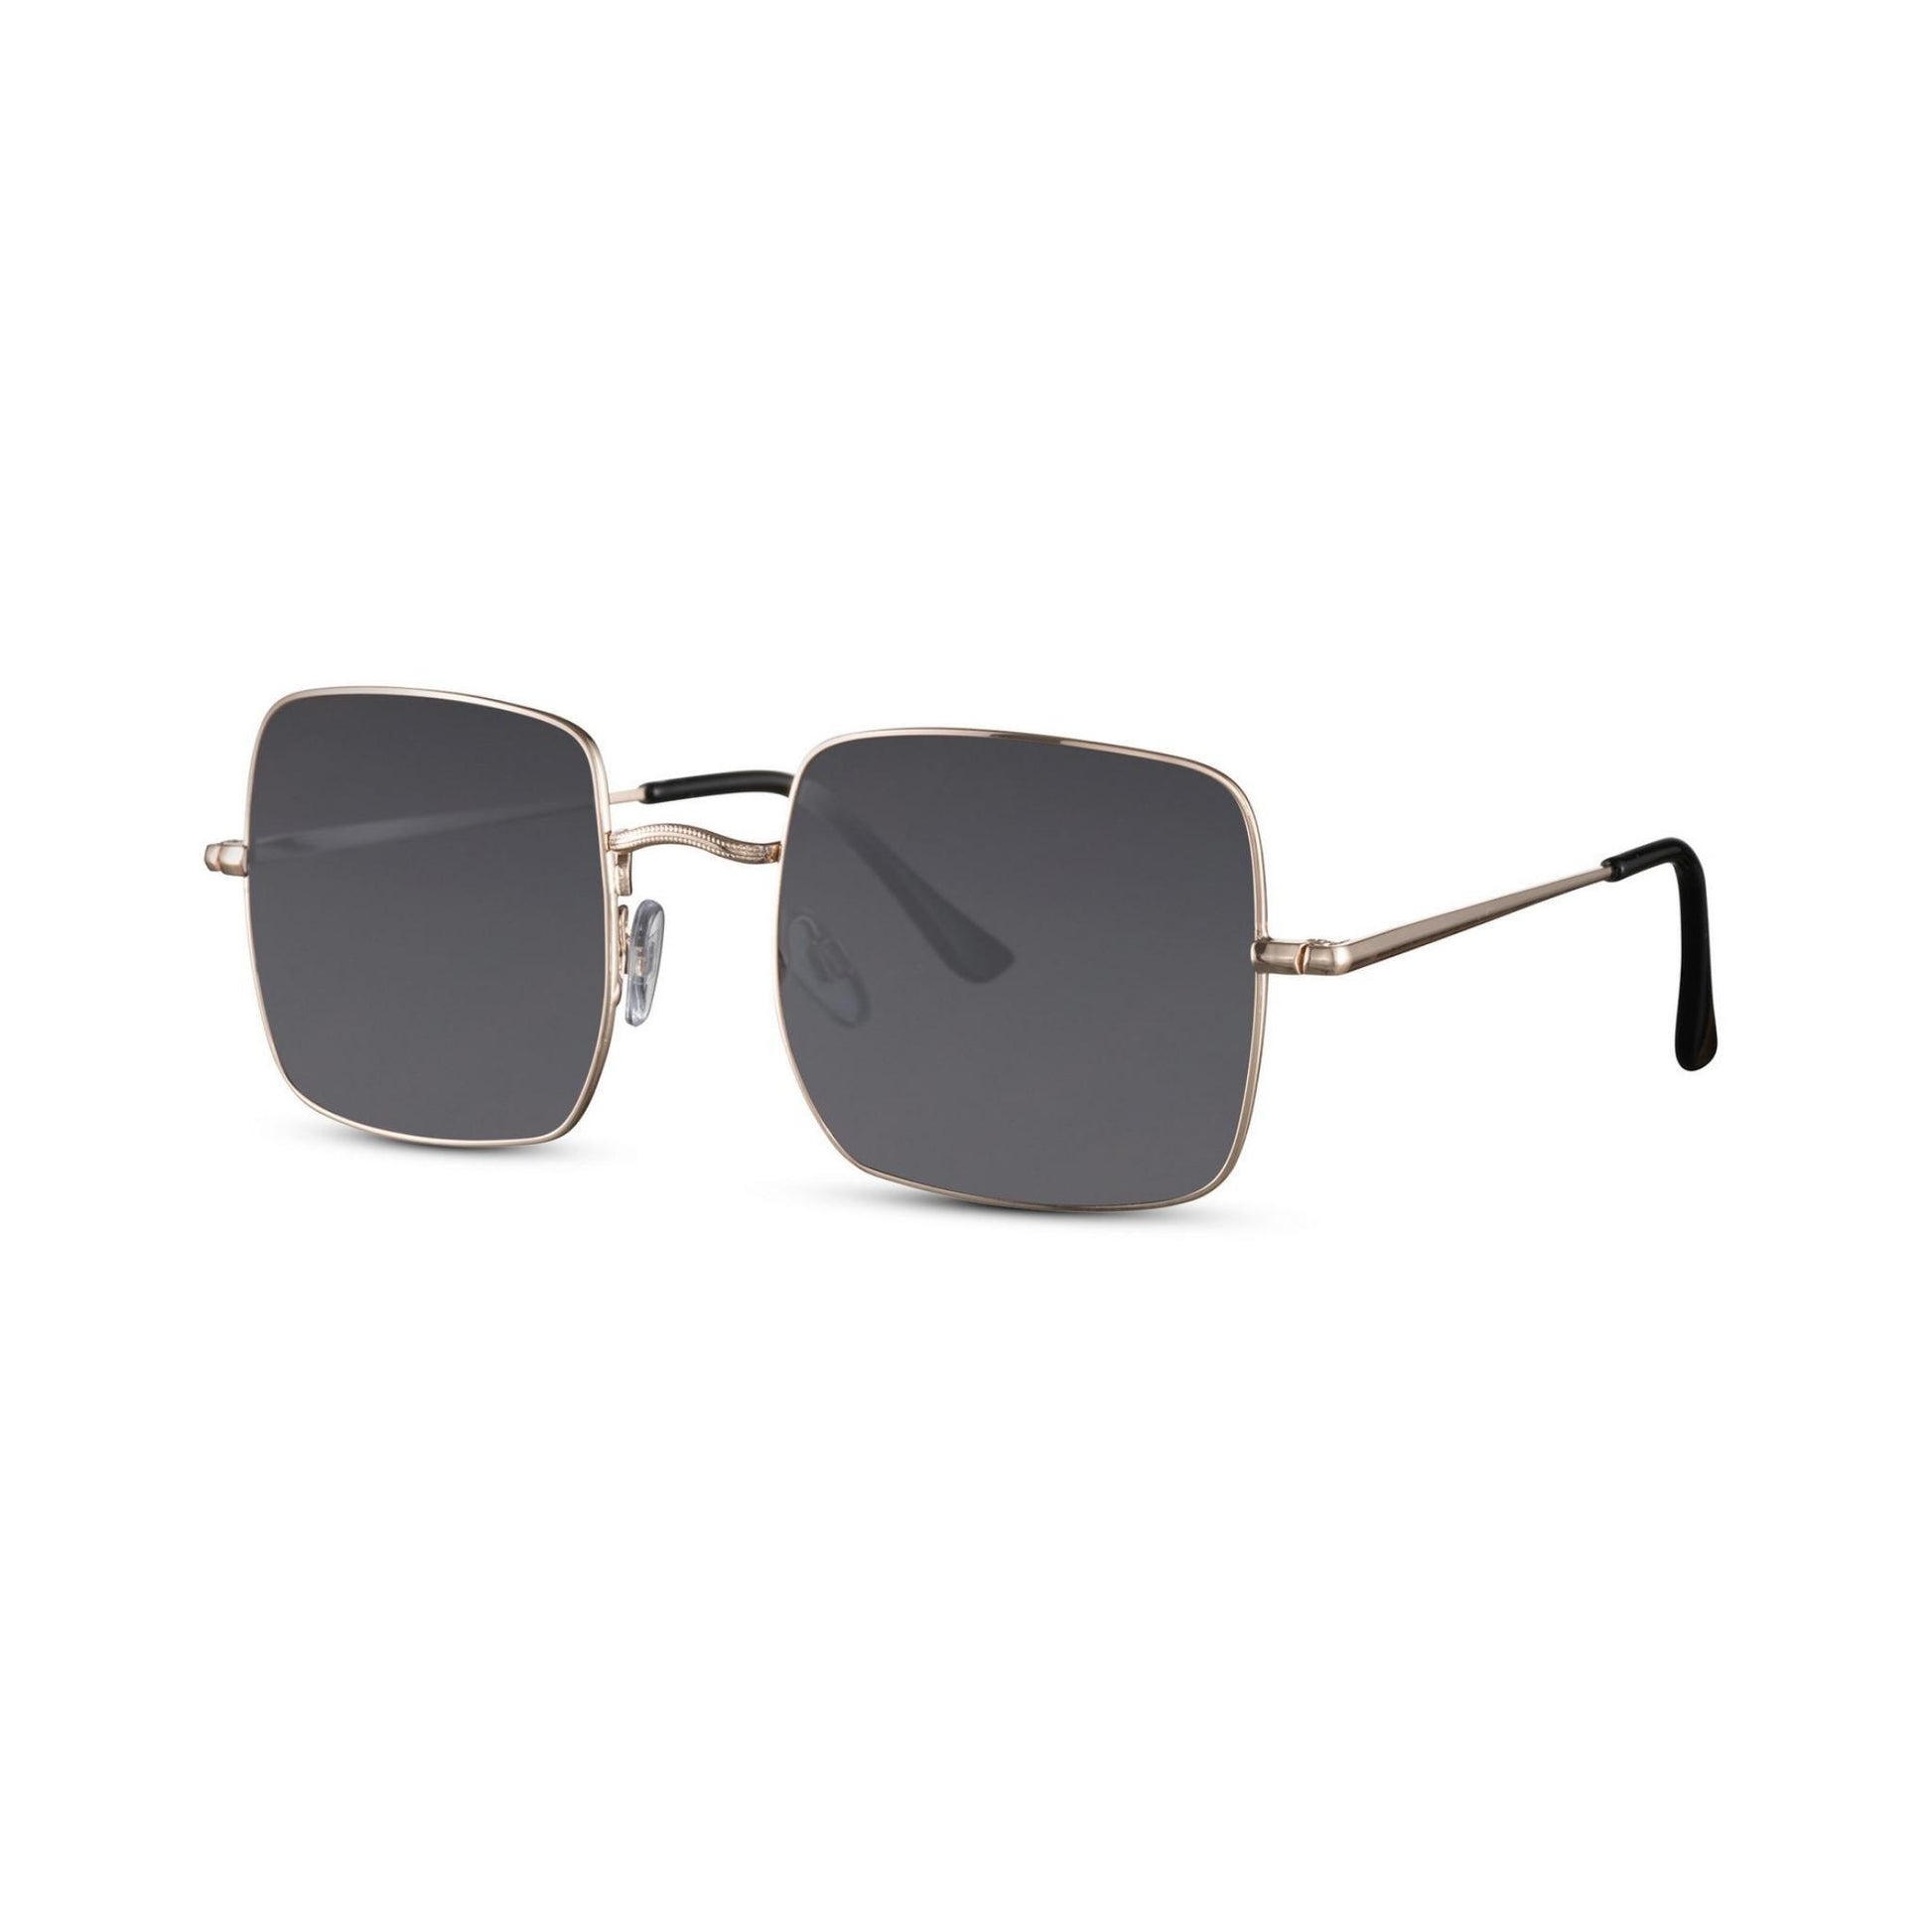 Τετράγωνα Γυαλιά ηλίου Muse της Exposure Sunglasses με προστασία UV400 με χρυσό σκελετό και μαύρο φακό. Πλάγια προβολή